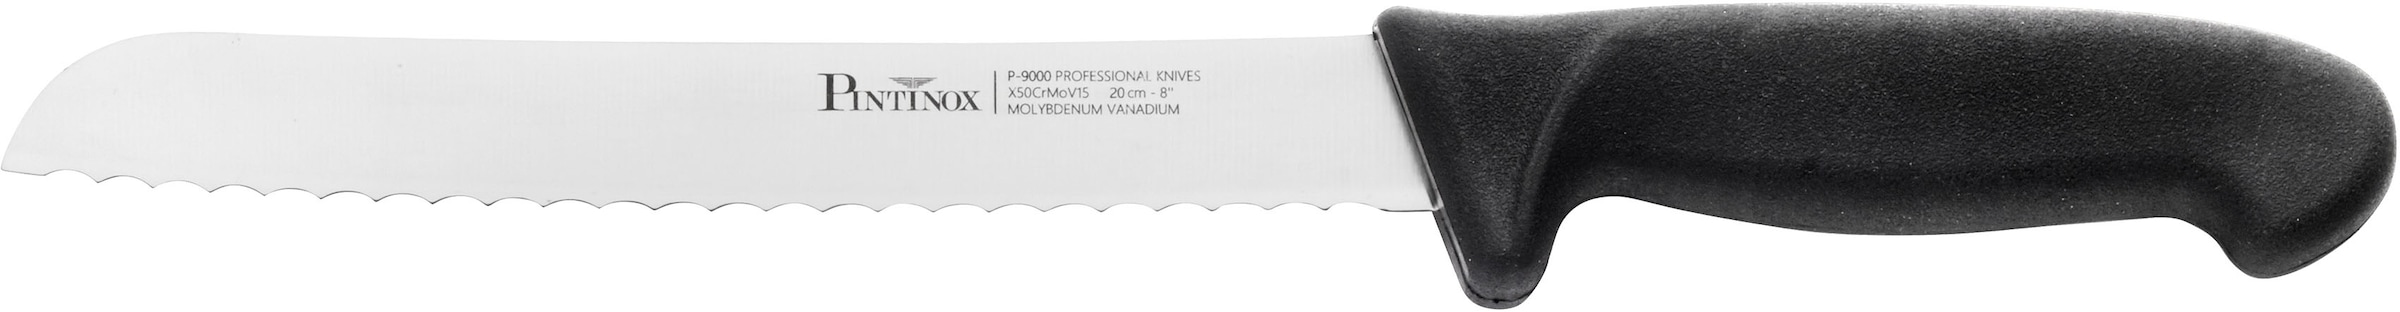 PINTINOX Brotzeitmesser »Coltelli P9000«, (1 tlg.), mit rutschfestem Kunststoffgriff, Klingenlänge 20 cm